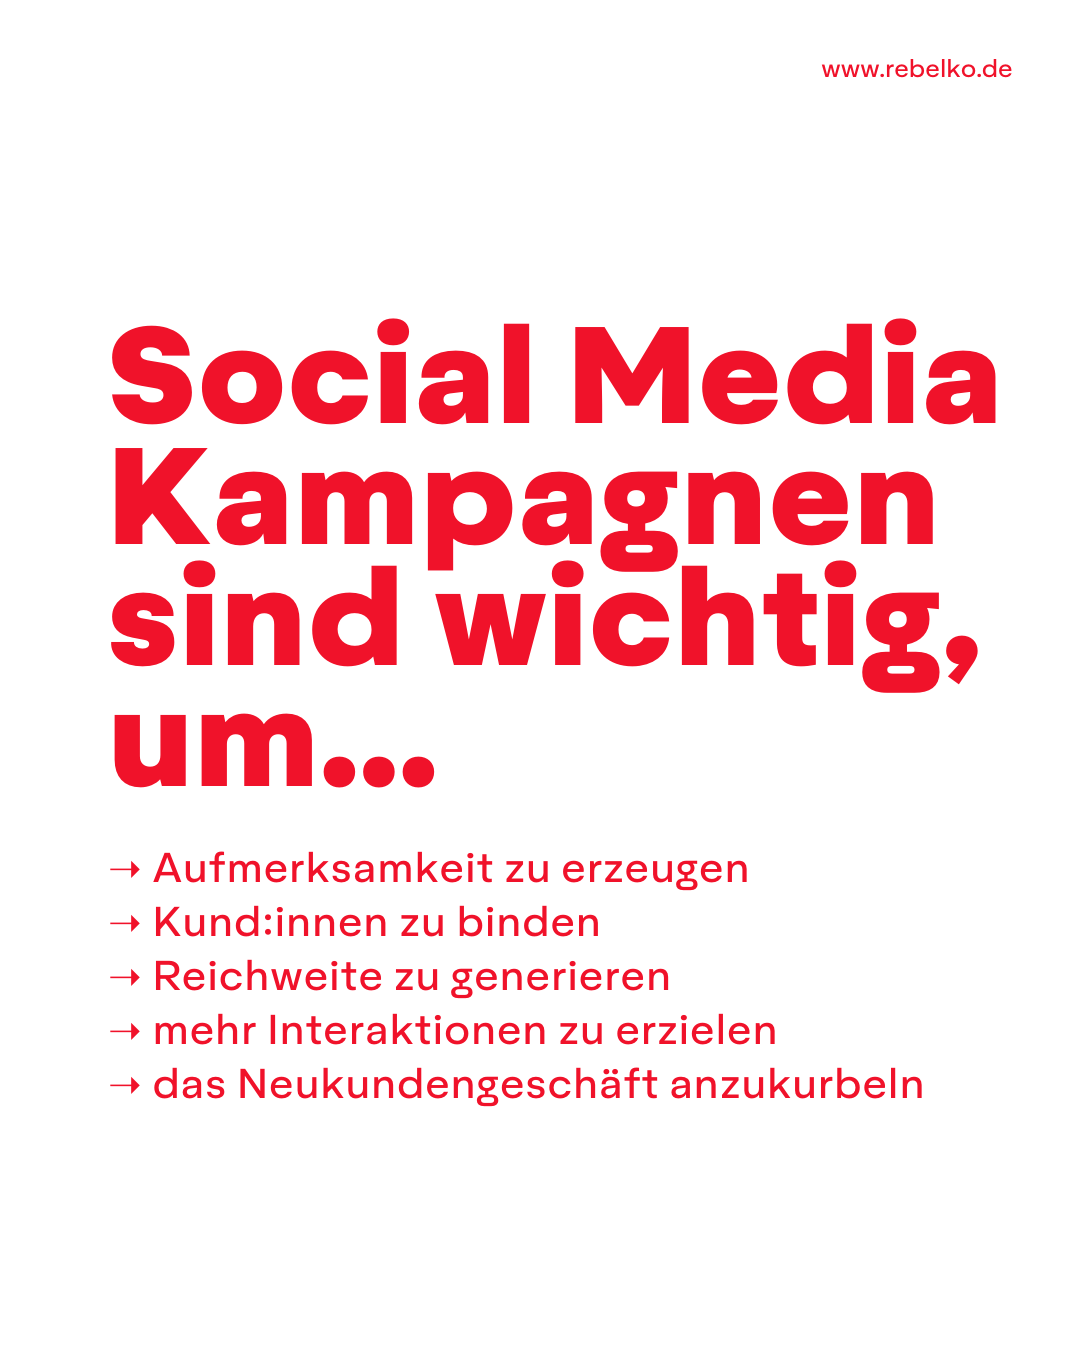 5 ideen fuer social media kampagen REBELKO Agentur Aachen Marketing  Design Kreativ Strategie Social Media Konzeption Beratung Creatives Digital 02